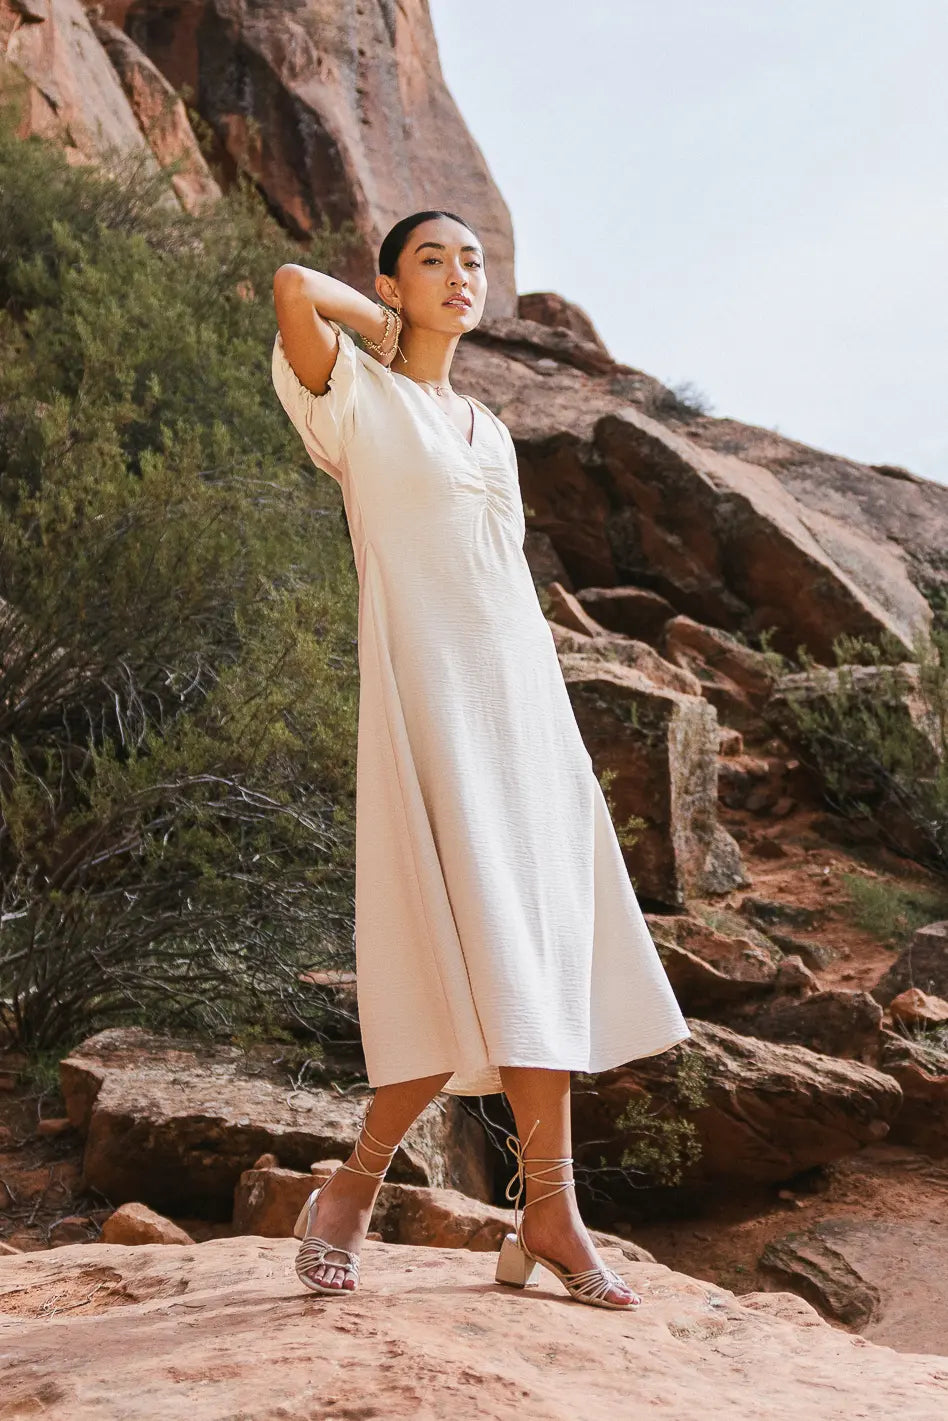 Image of Maeve Midi Dress in Cream